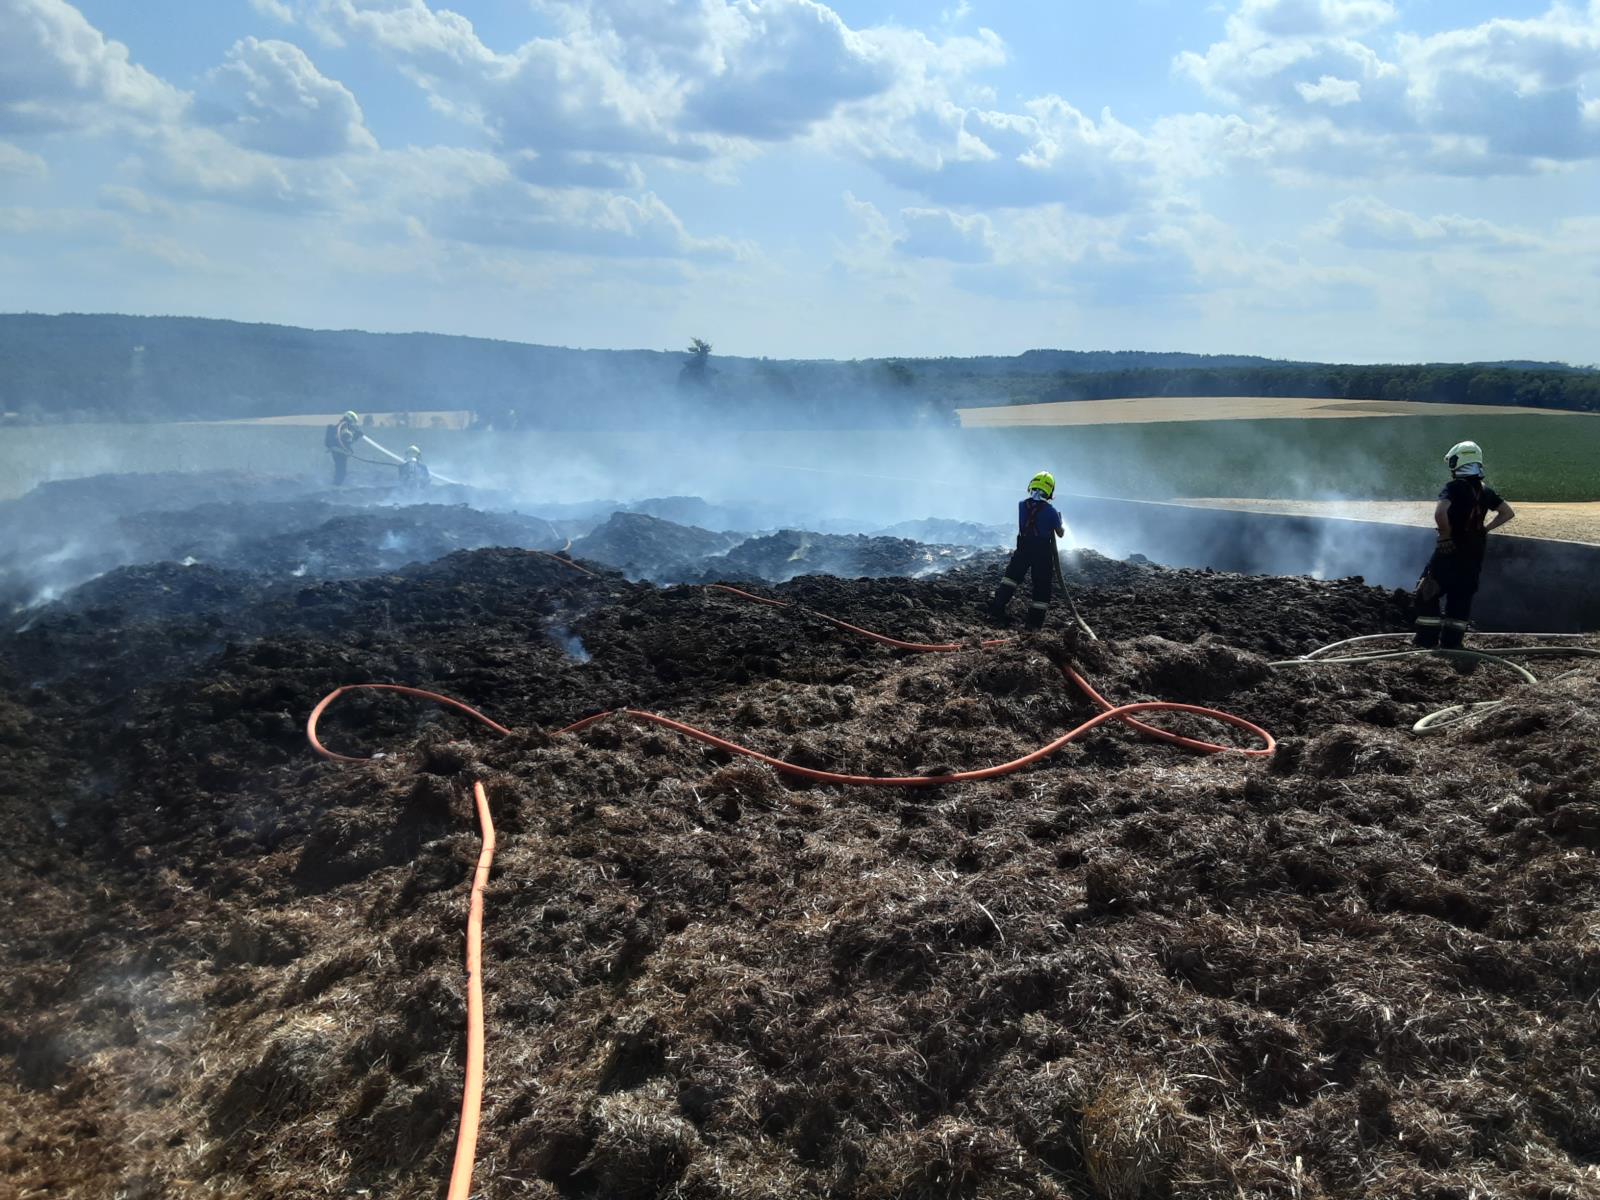 Náročný požár prostor pro uskladnění siláže - na pomoc dorazila zemědělská technika, zásobování vodou řešeno z přehrady Vilémov.